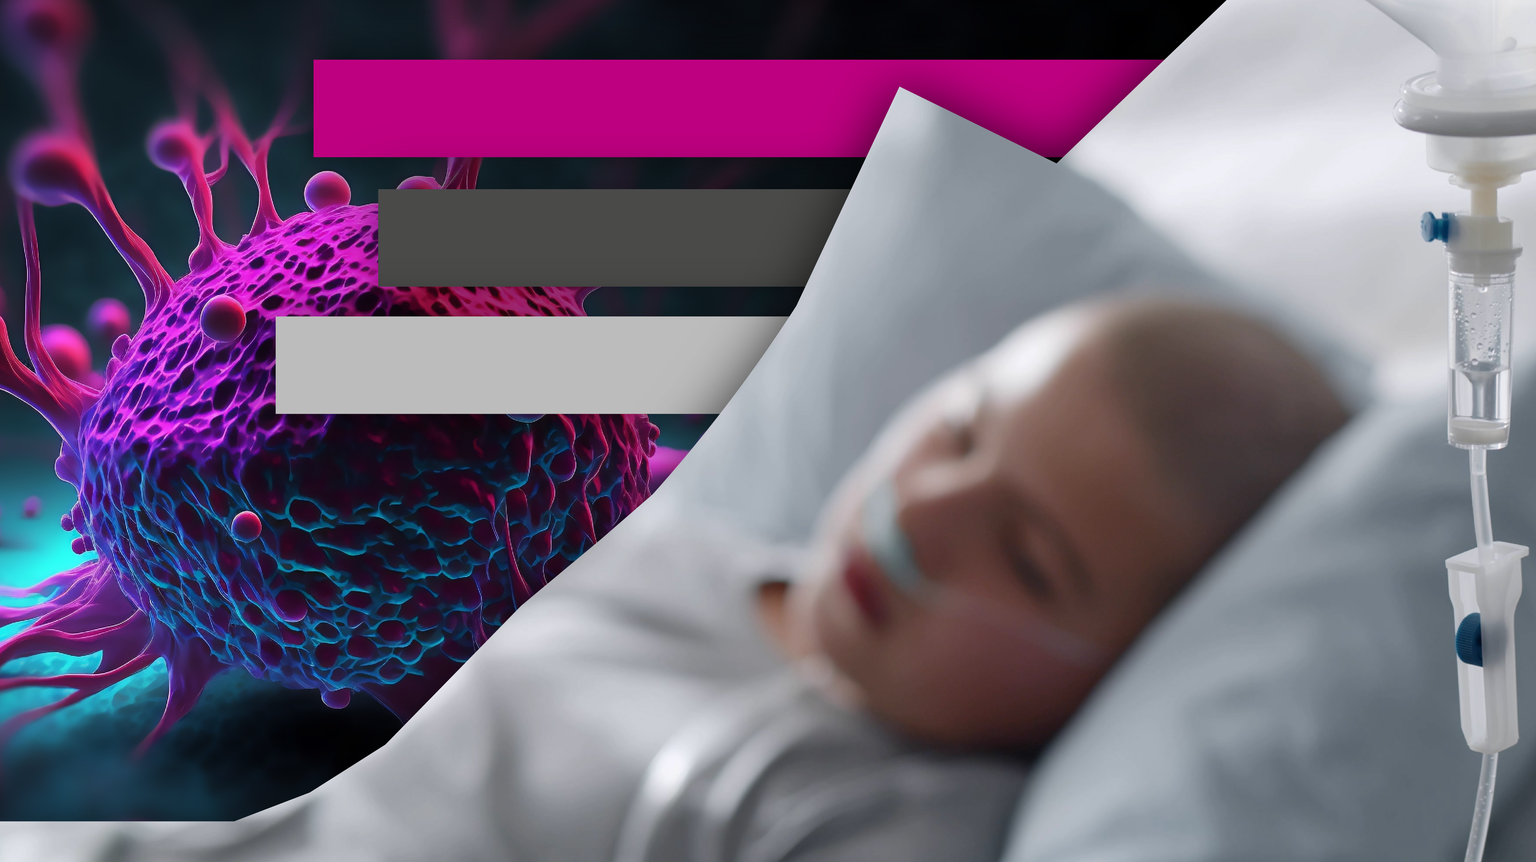 Teaserbild Krebs krebskrankes Kind im Spital